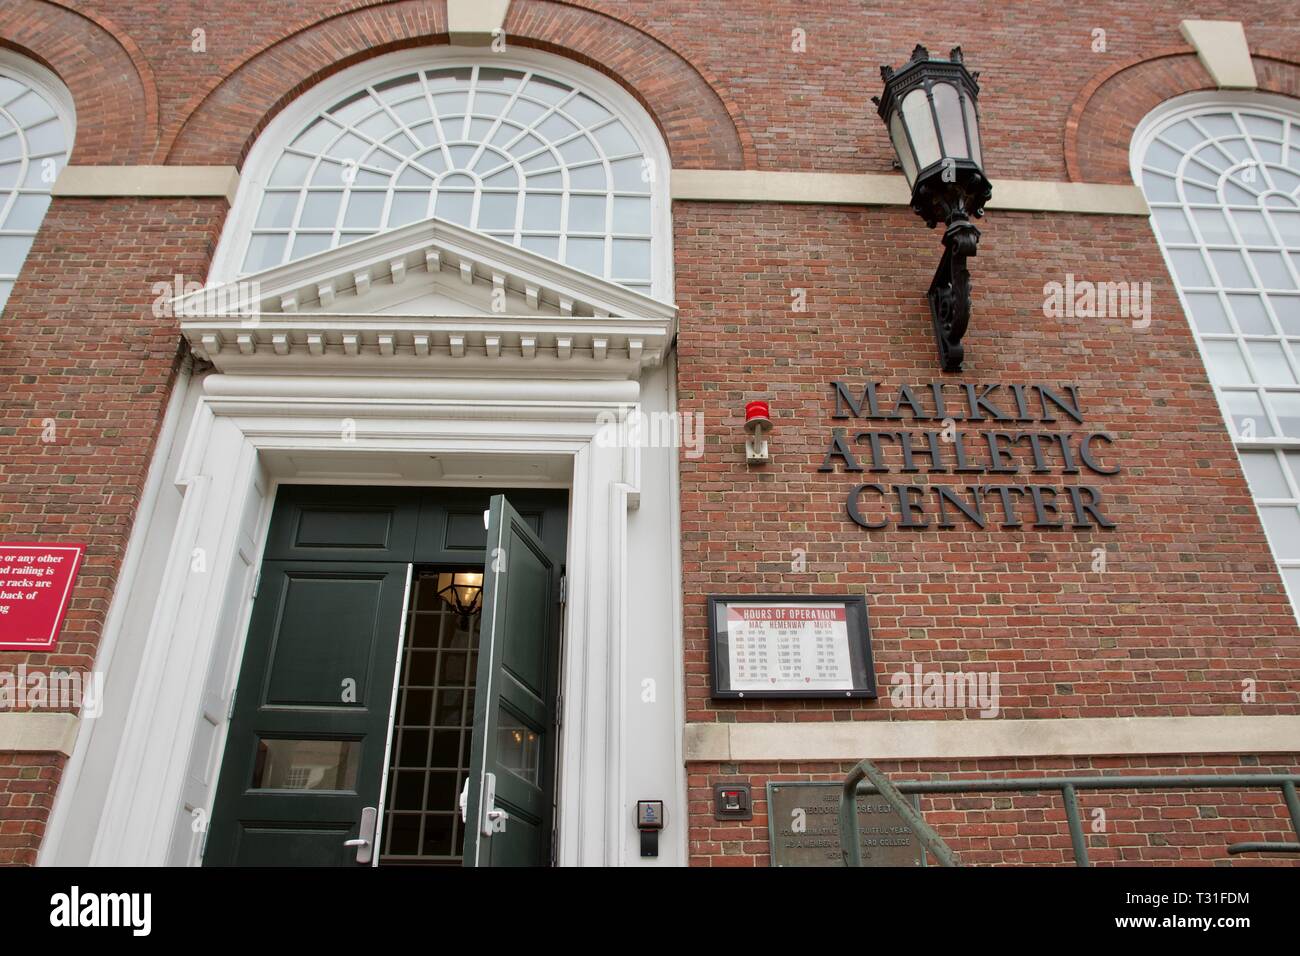 Harvard Malkin Athletic Center in Cambridge, Massachusetts, USA Stockfoto